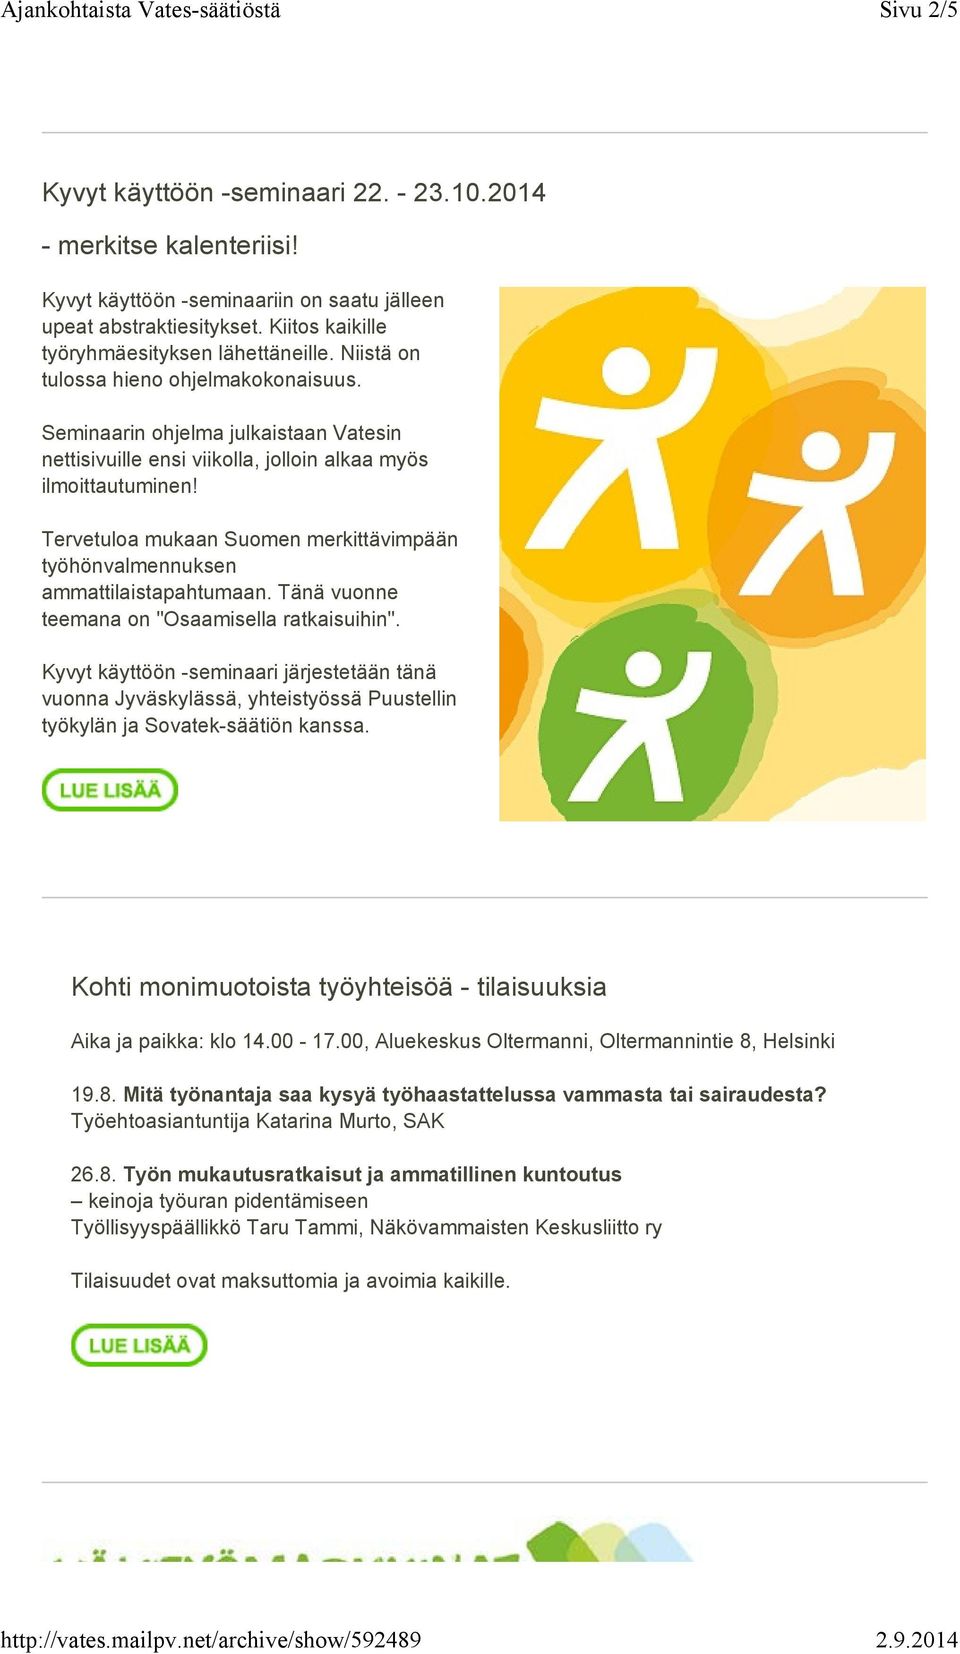 Tervetuloa mukaan Suomen merkittävimpään työhönvalmennuksen ammattilaistapahtumaan. Tänä vuonne teemana on "Osaamisella ratkaisuihin".